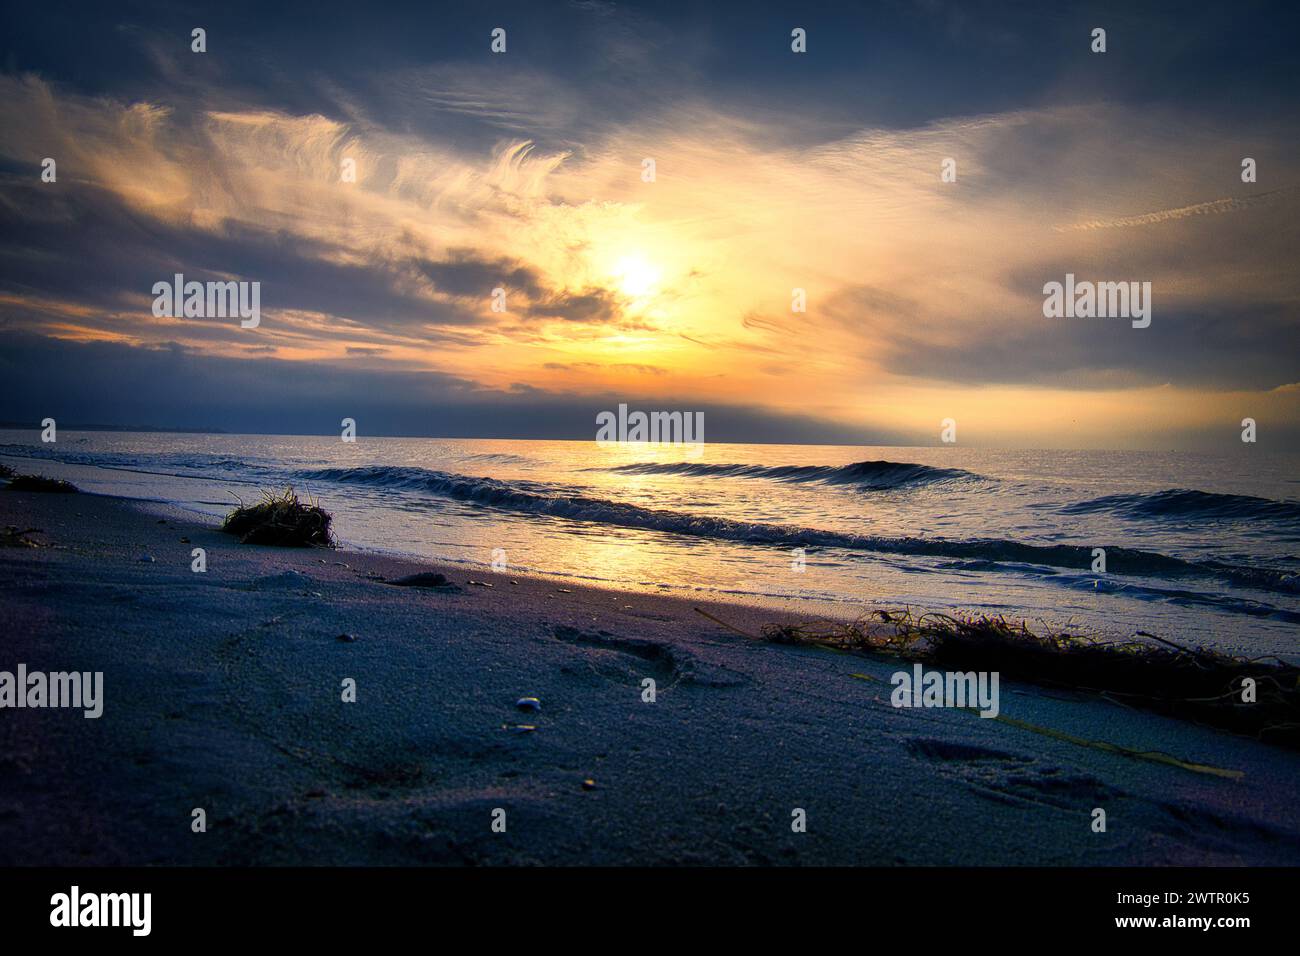 Coucher de soleil, mer illuminée. Plage de sable au premier plan. Ondes lumineuses. Mer Baltique. Paysage sur la côte Banque D'Images